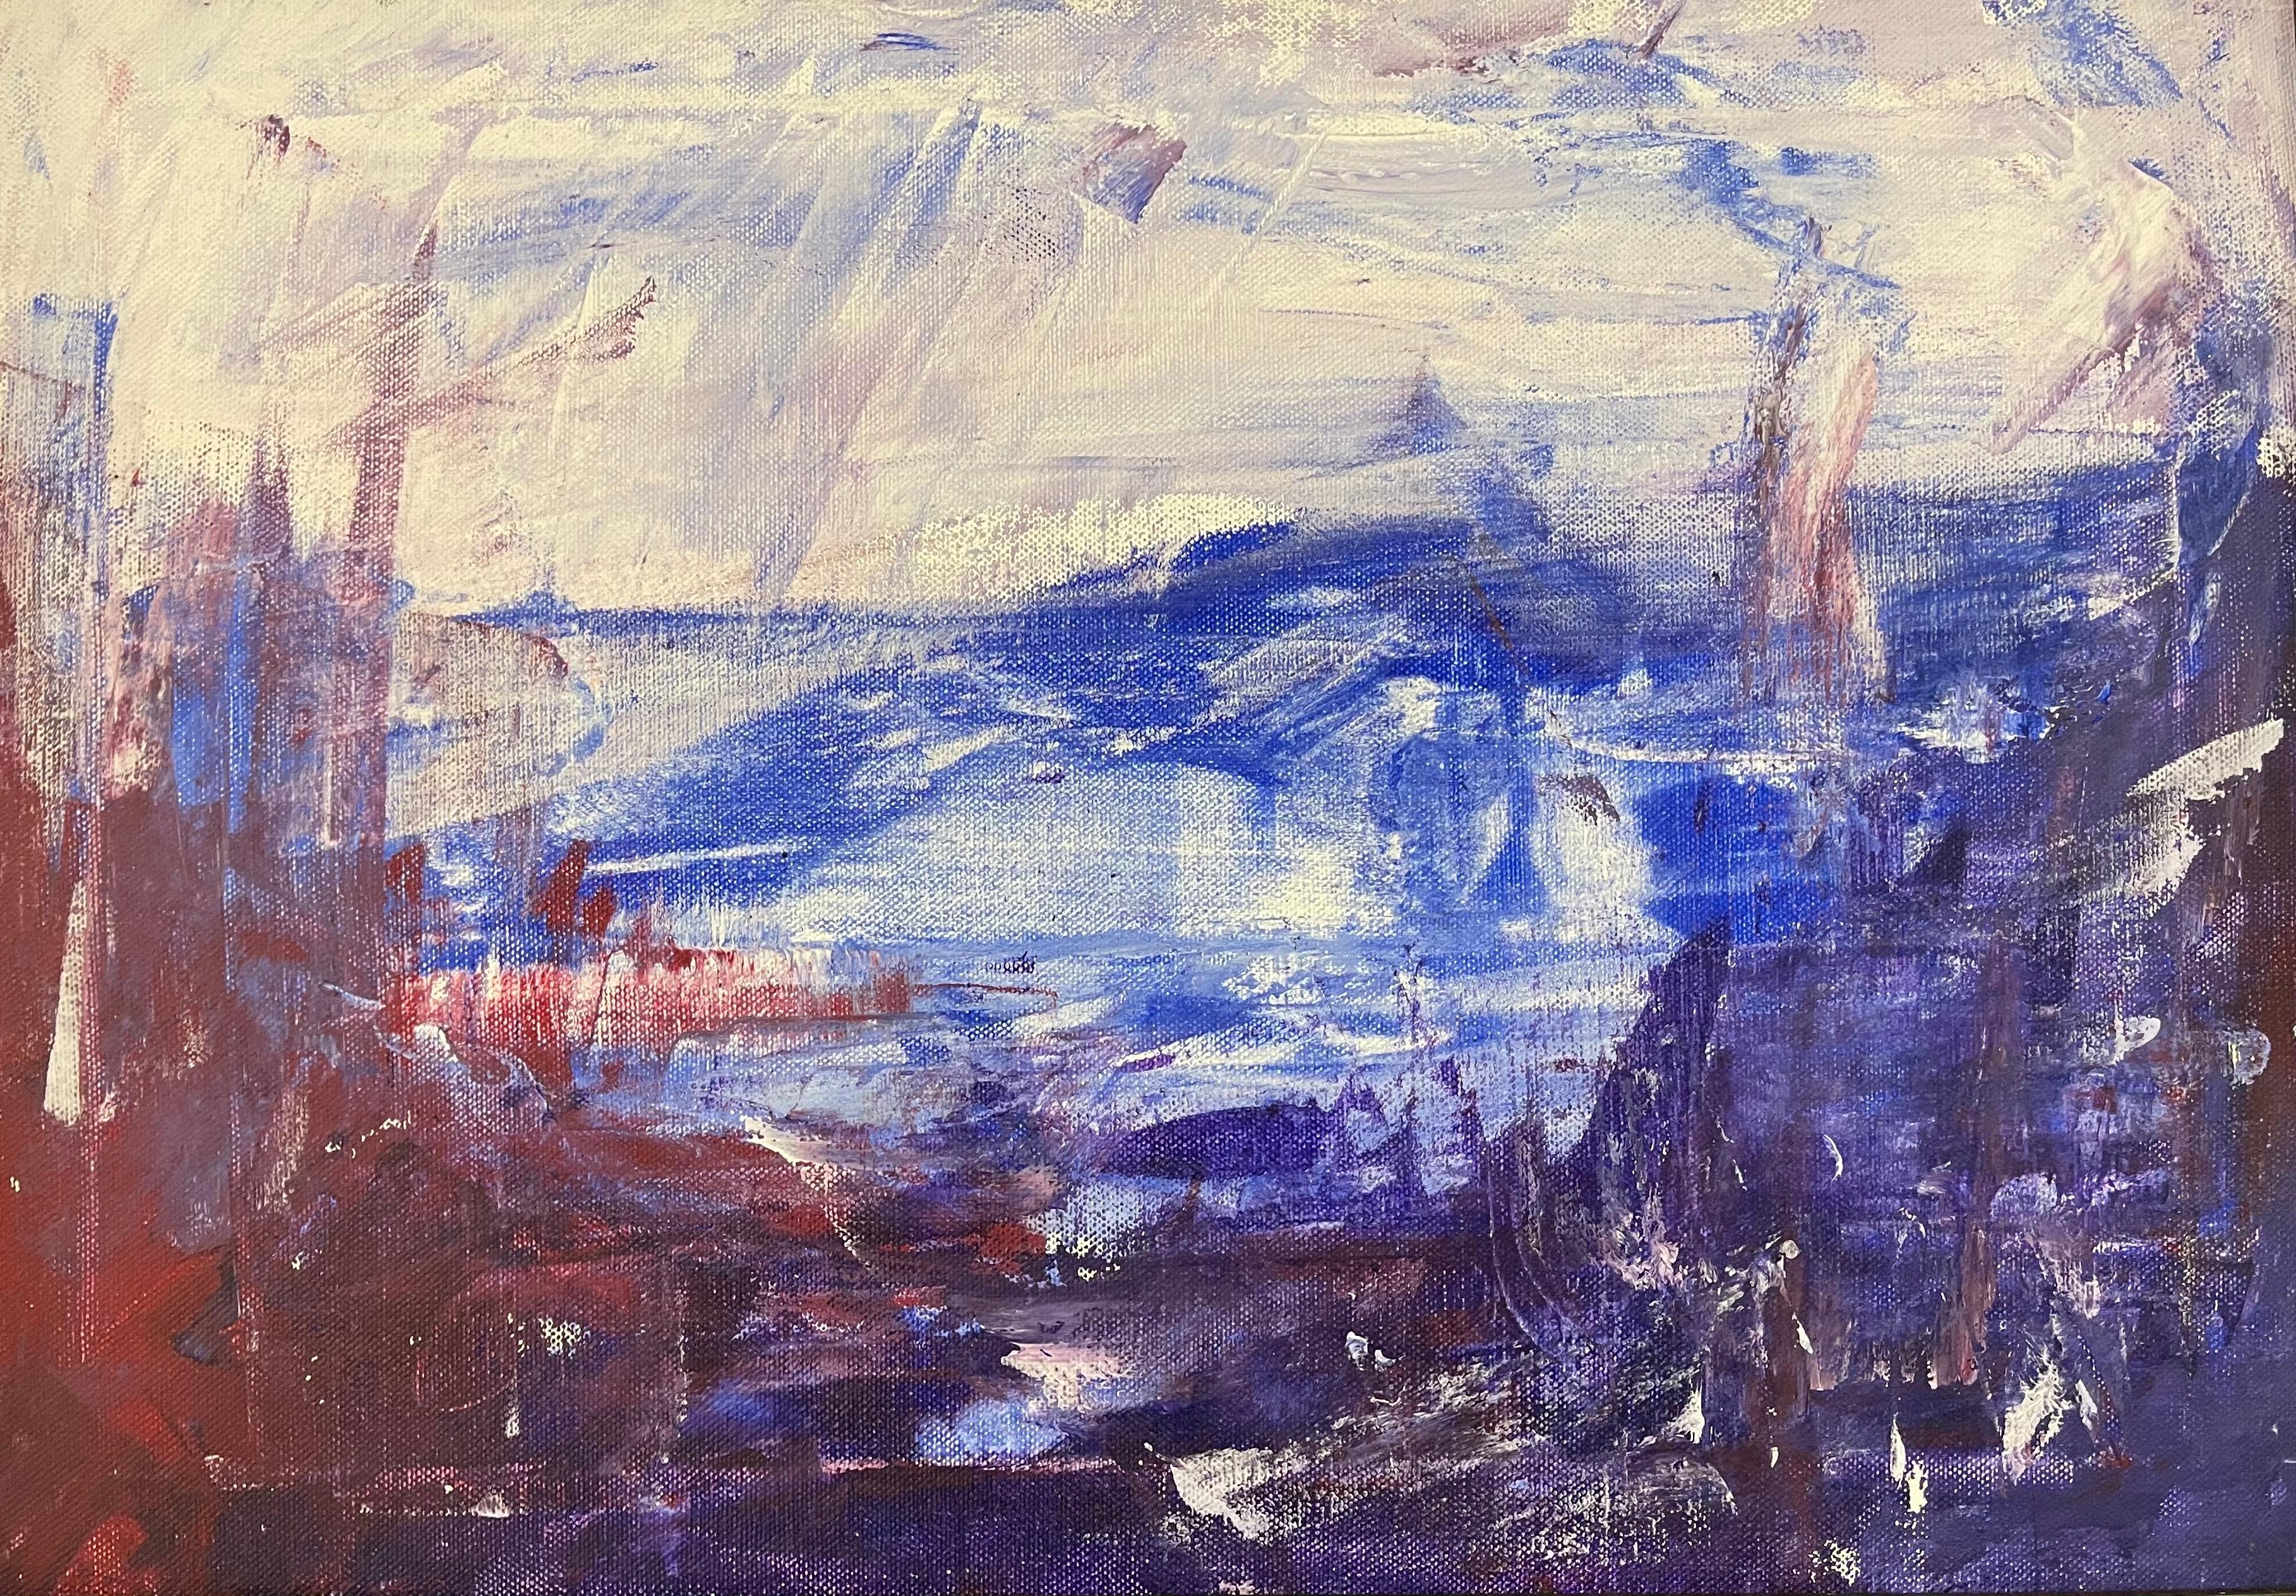 Blue Mountain Peinture expressionniste abstraite de l'artiste peintre britannique contemporaine Angela Wakefield. 

L'œuvre d'art mesure 18,5 x 13 pouces
Le cadre mesure 24 x 18,5 pouces

Cette peinture est une rare œuvre de jeunesse issue d'un